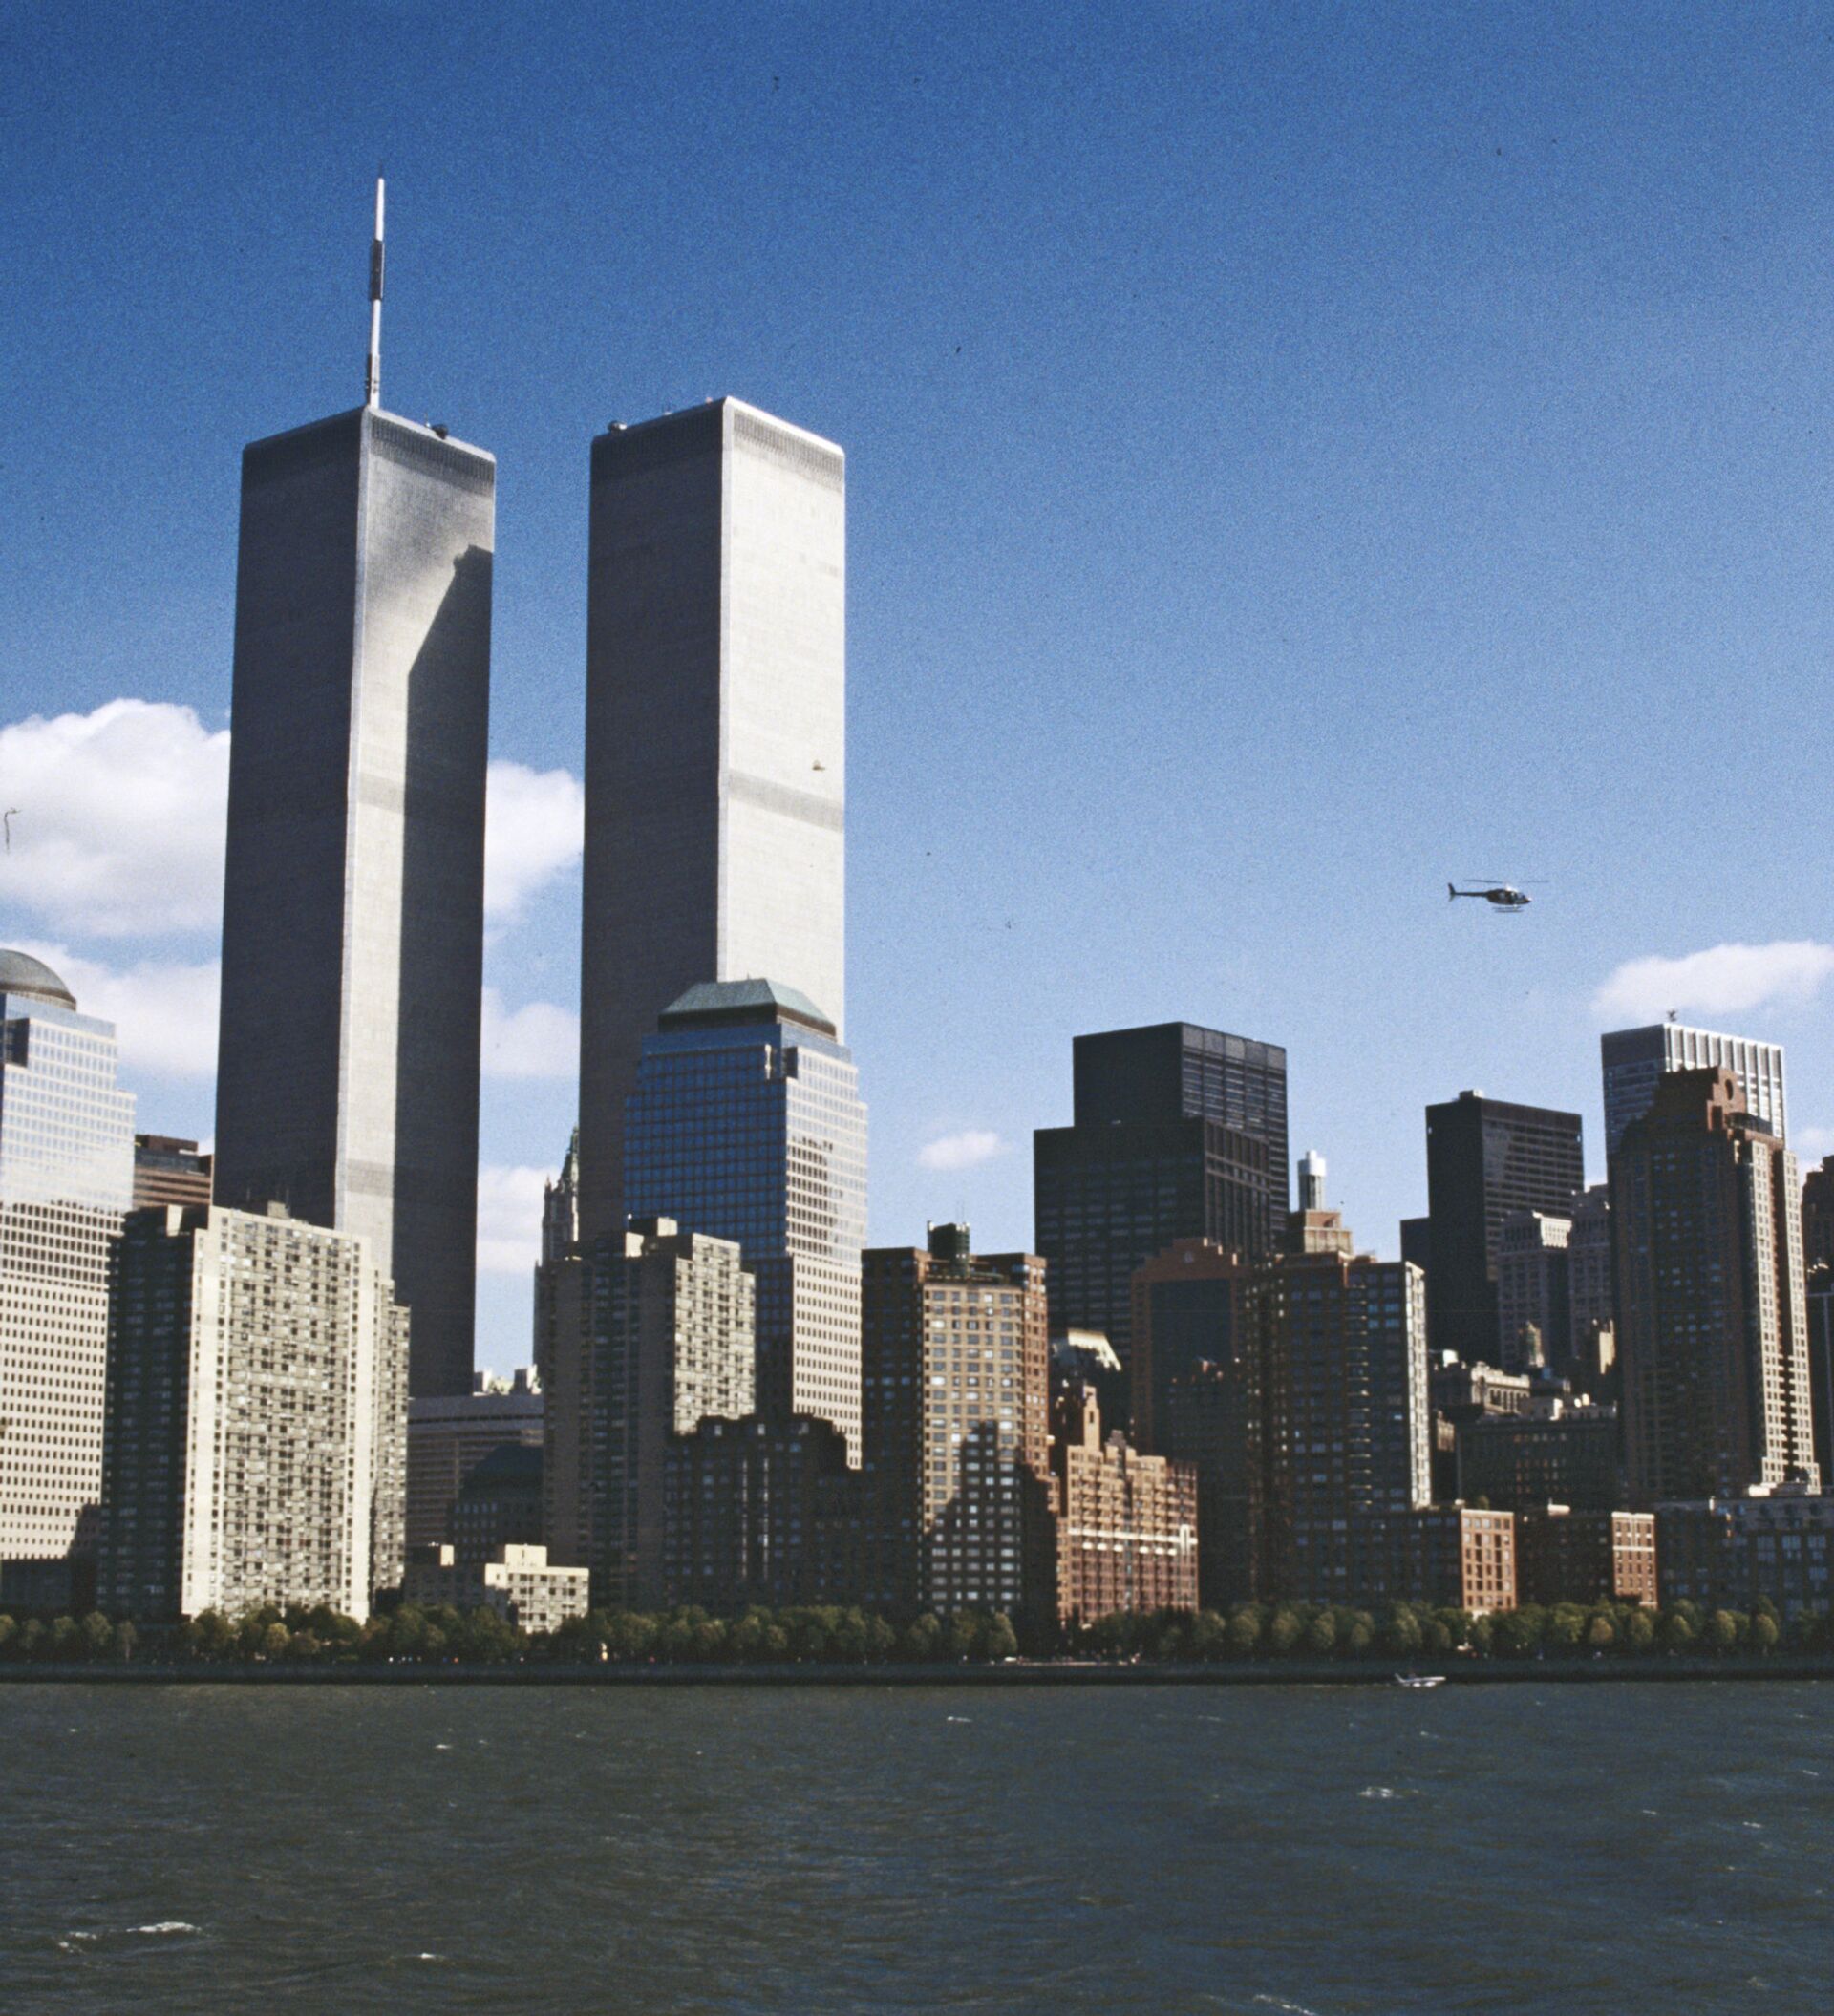 Сколько этажей было в башнях близнецах. Башни ВТЦ. ВТЦ Нью-Йорк. Всемирный торговый центр в Нью-Йорке 11 сентября. Нью Йорк башни Близнецы 2002.